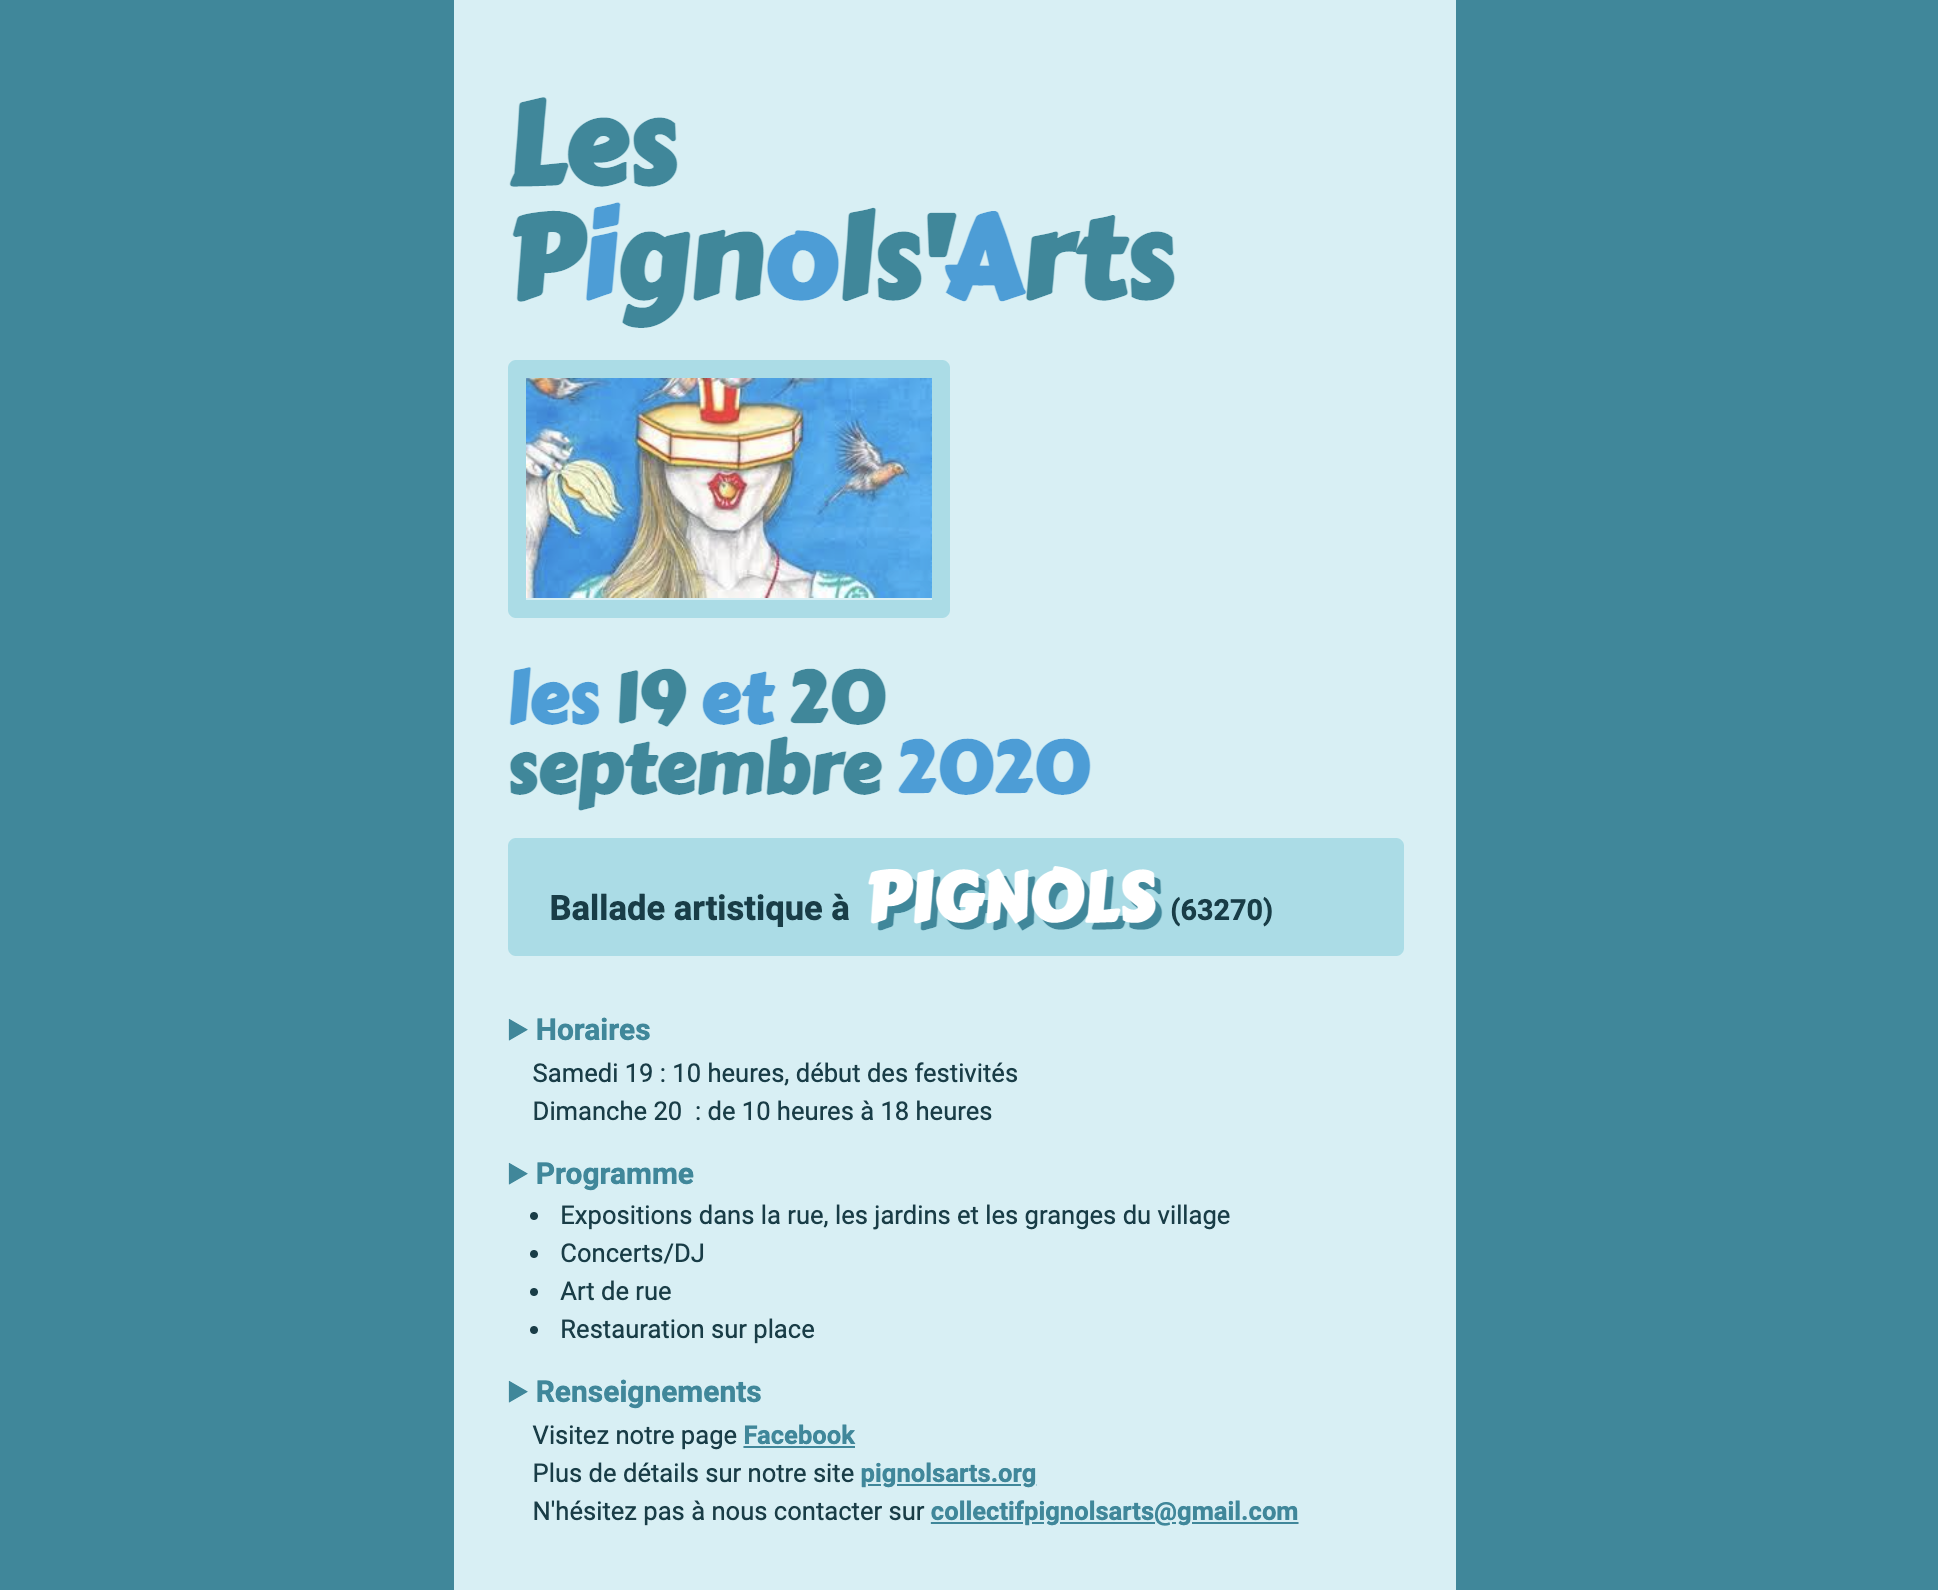 Capture d'écran de la page Web intitulée Les Pignols'Arts